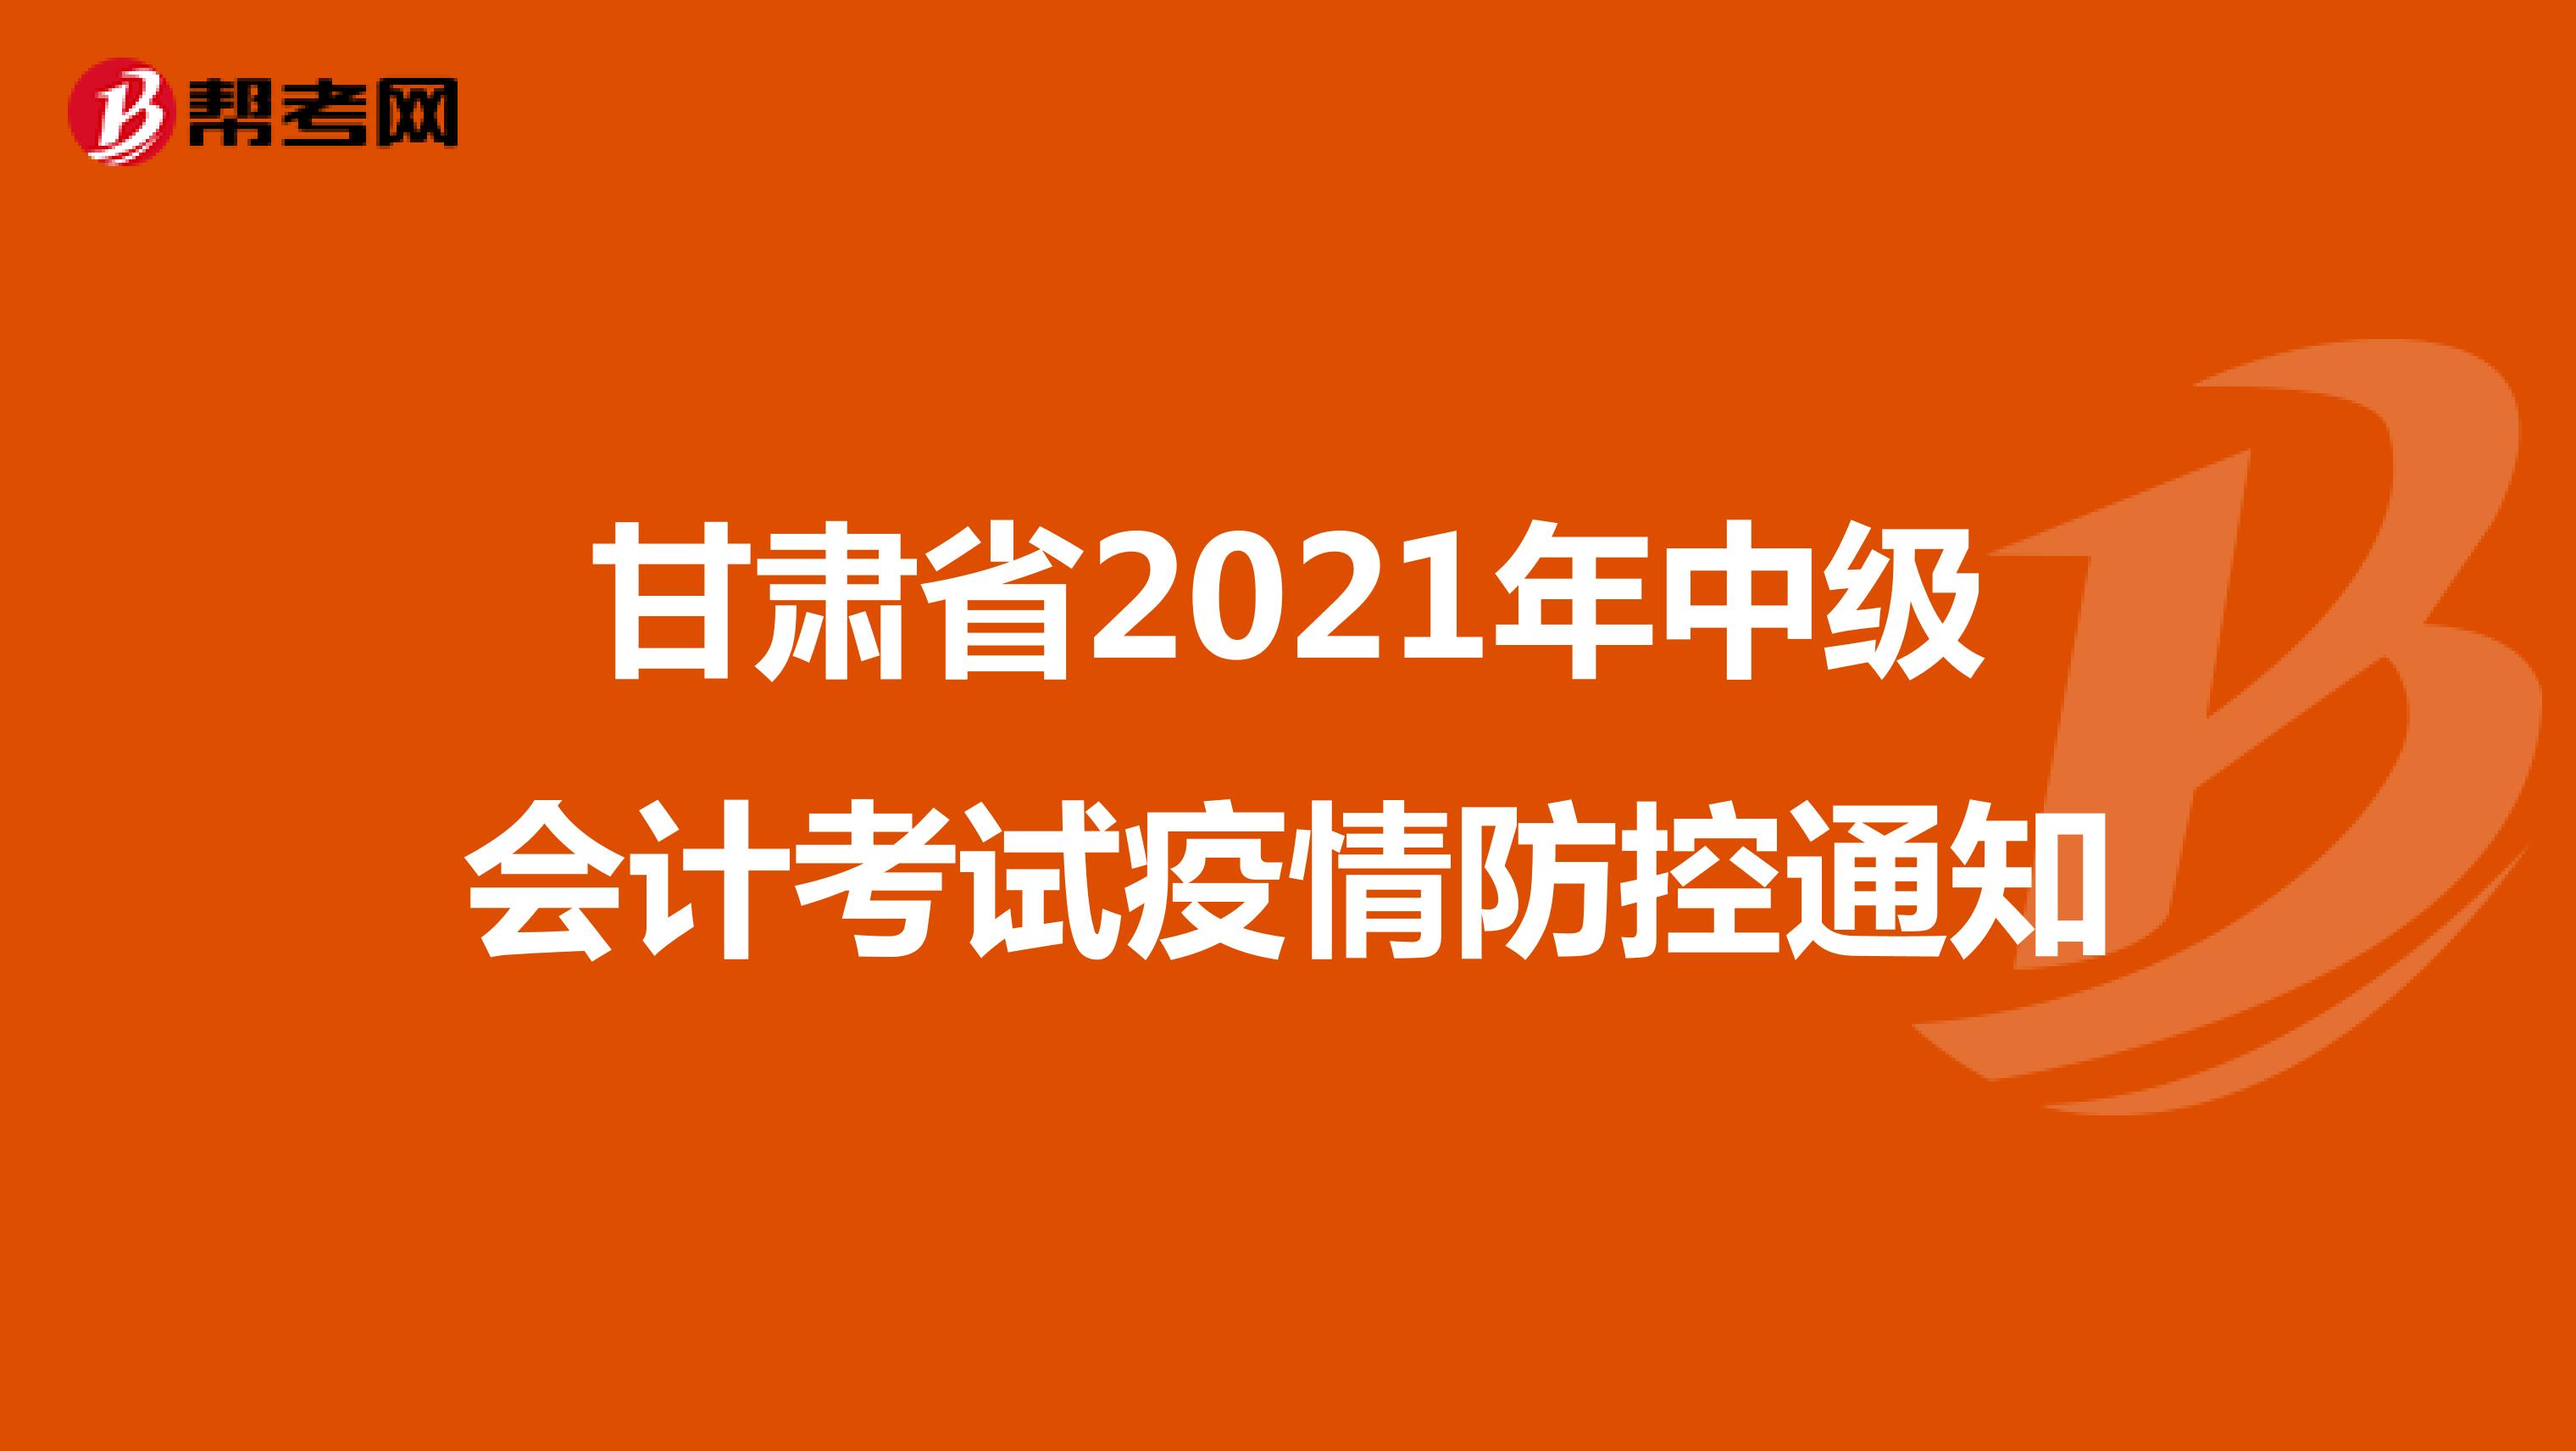 甘肃省2021年中级会计考试疫情防控通知